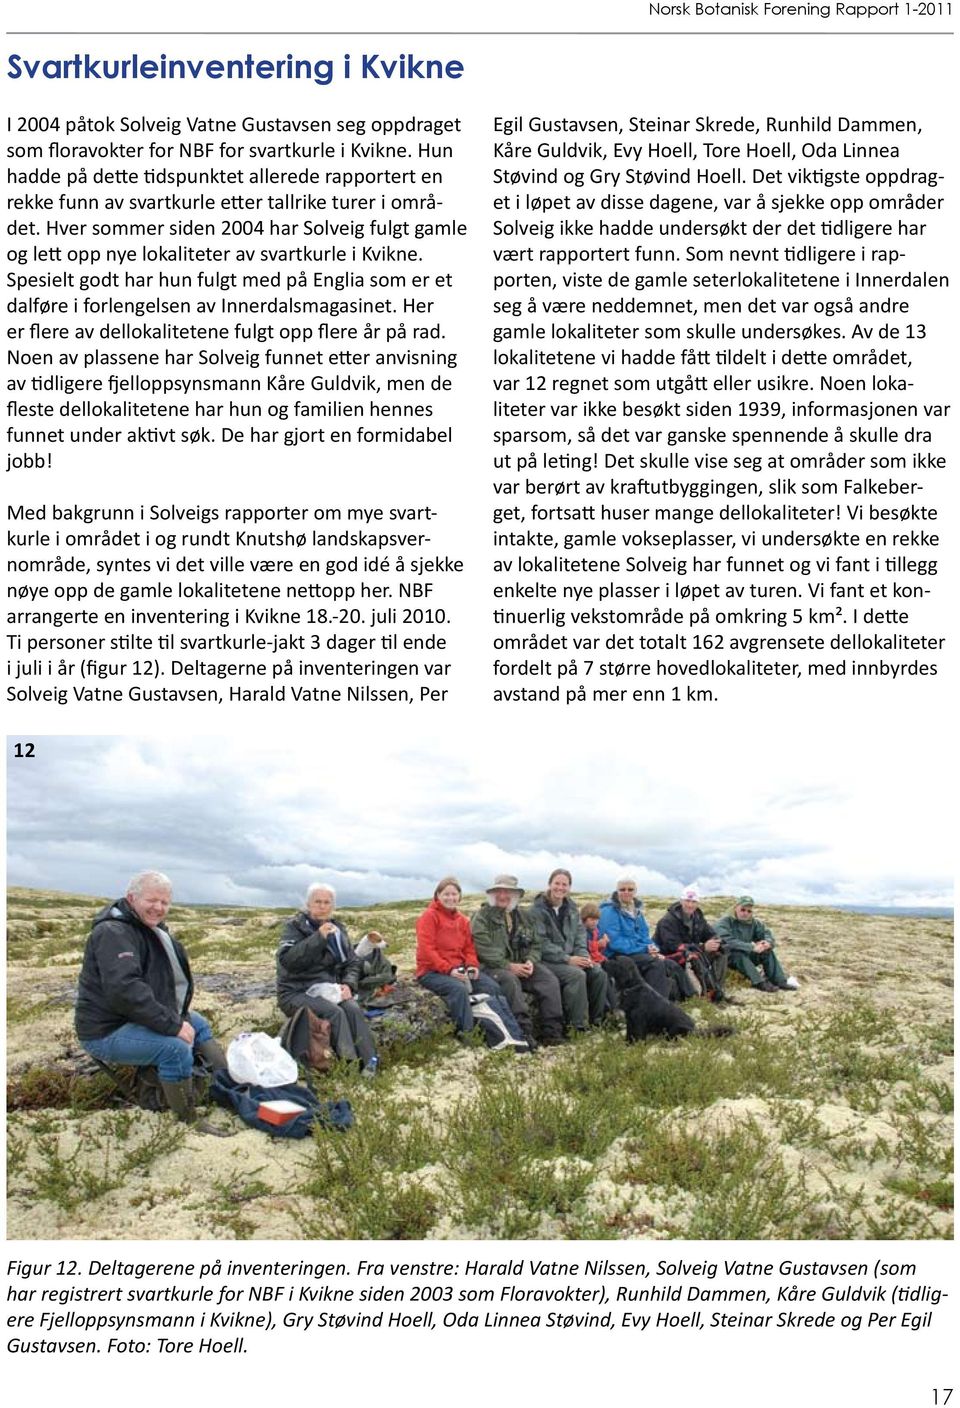 Hver sommer siden 2004 har Solveig fulgt gamle og lett opp nye lokaliteter av svartkurle i Kvikne. Spesielt godt har hun fulgt med på Englia som er et dalføre i forlengelsen av Innerdalsmagasinet.